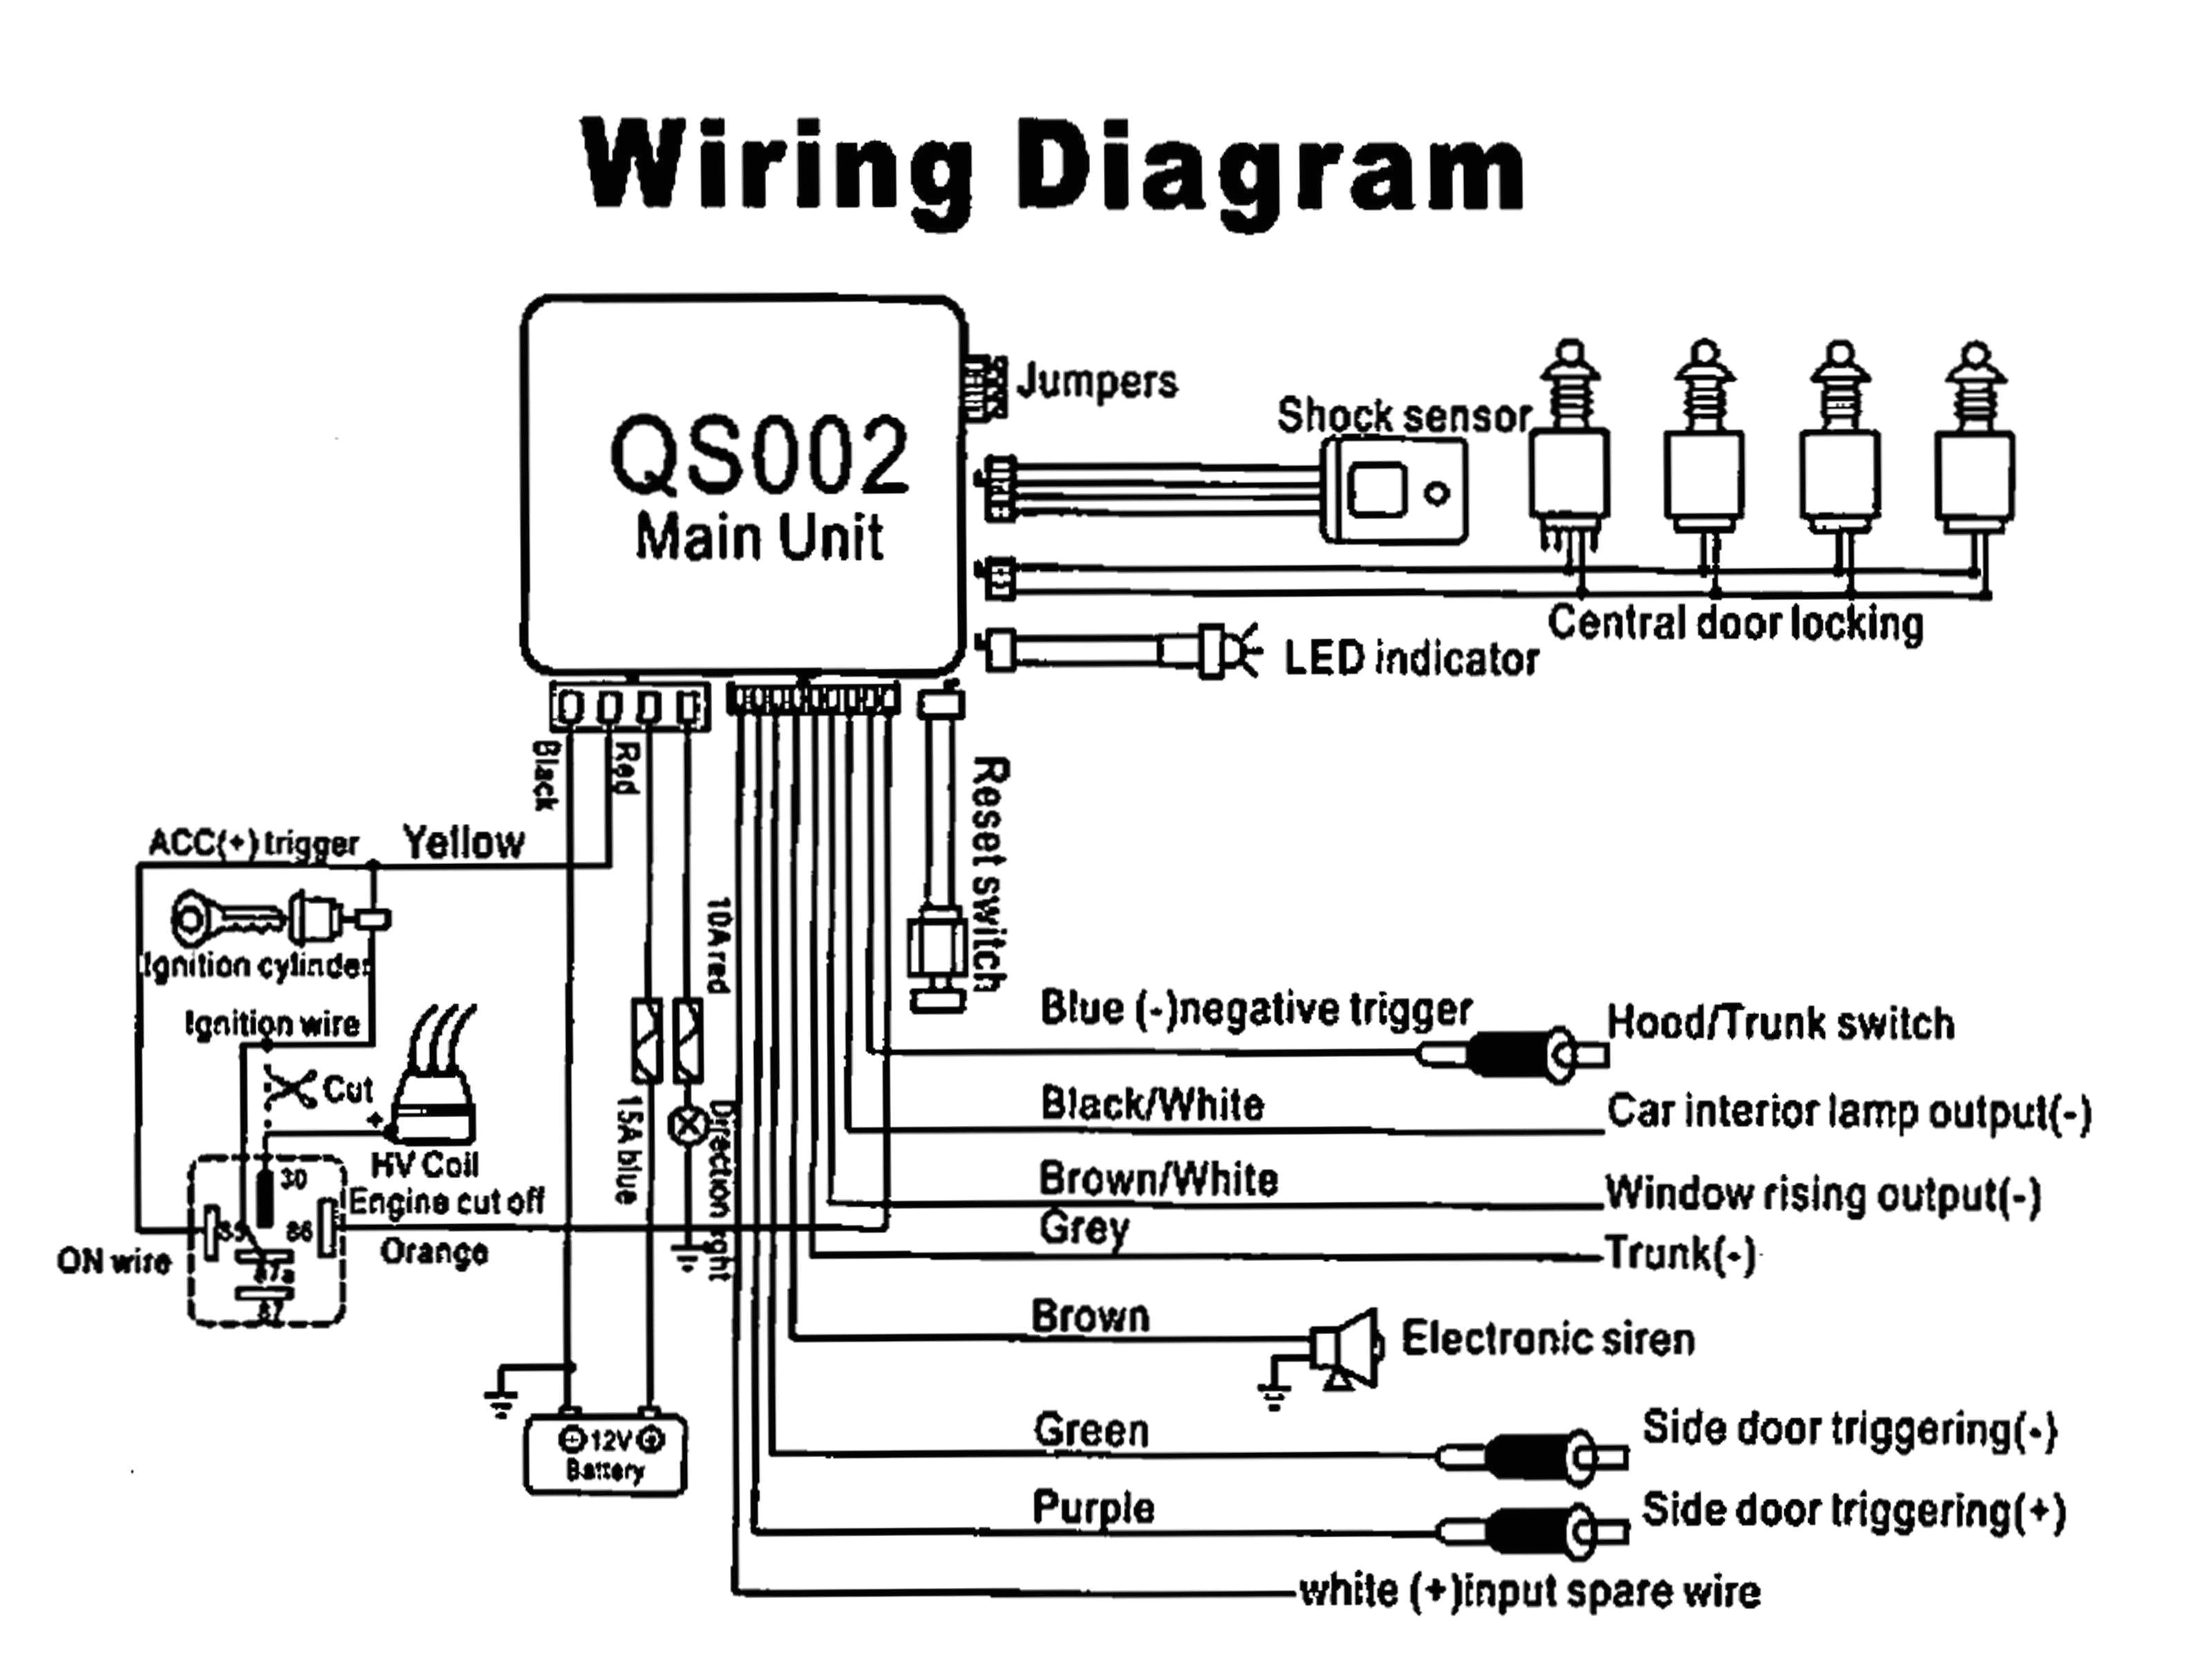 wiring diagram of car alarm wiring diagrams value wiring diagram car alarm system wiring diagram auto alarm